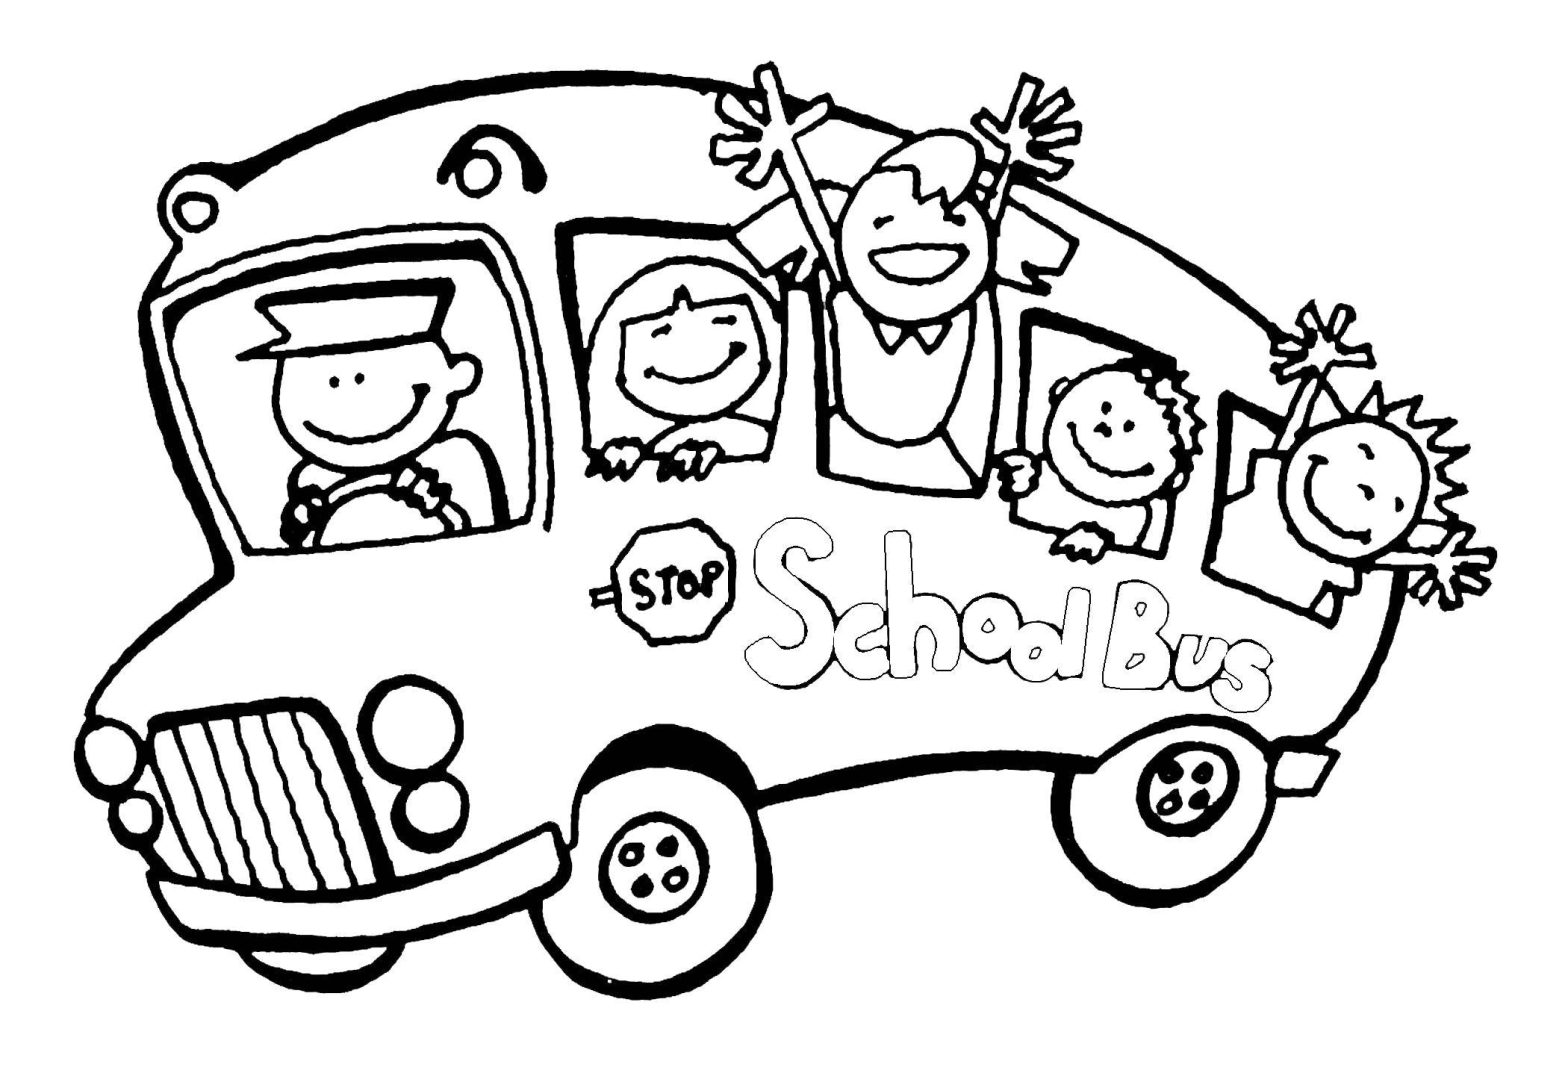 Раскраска транспорта на английском языке для учеников школы (транспорт, ученики)